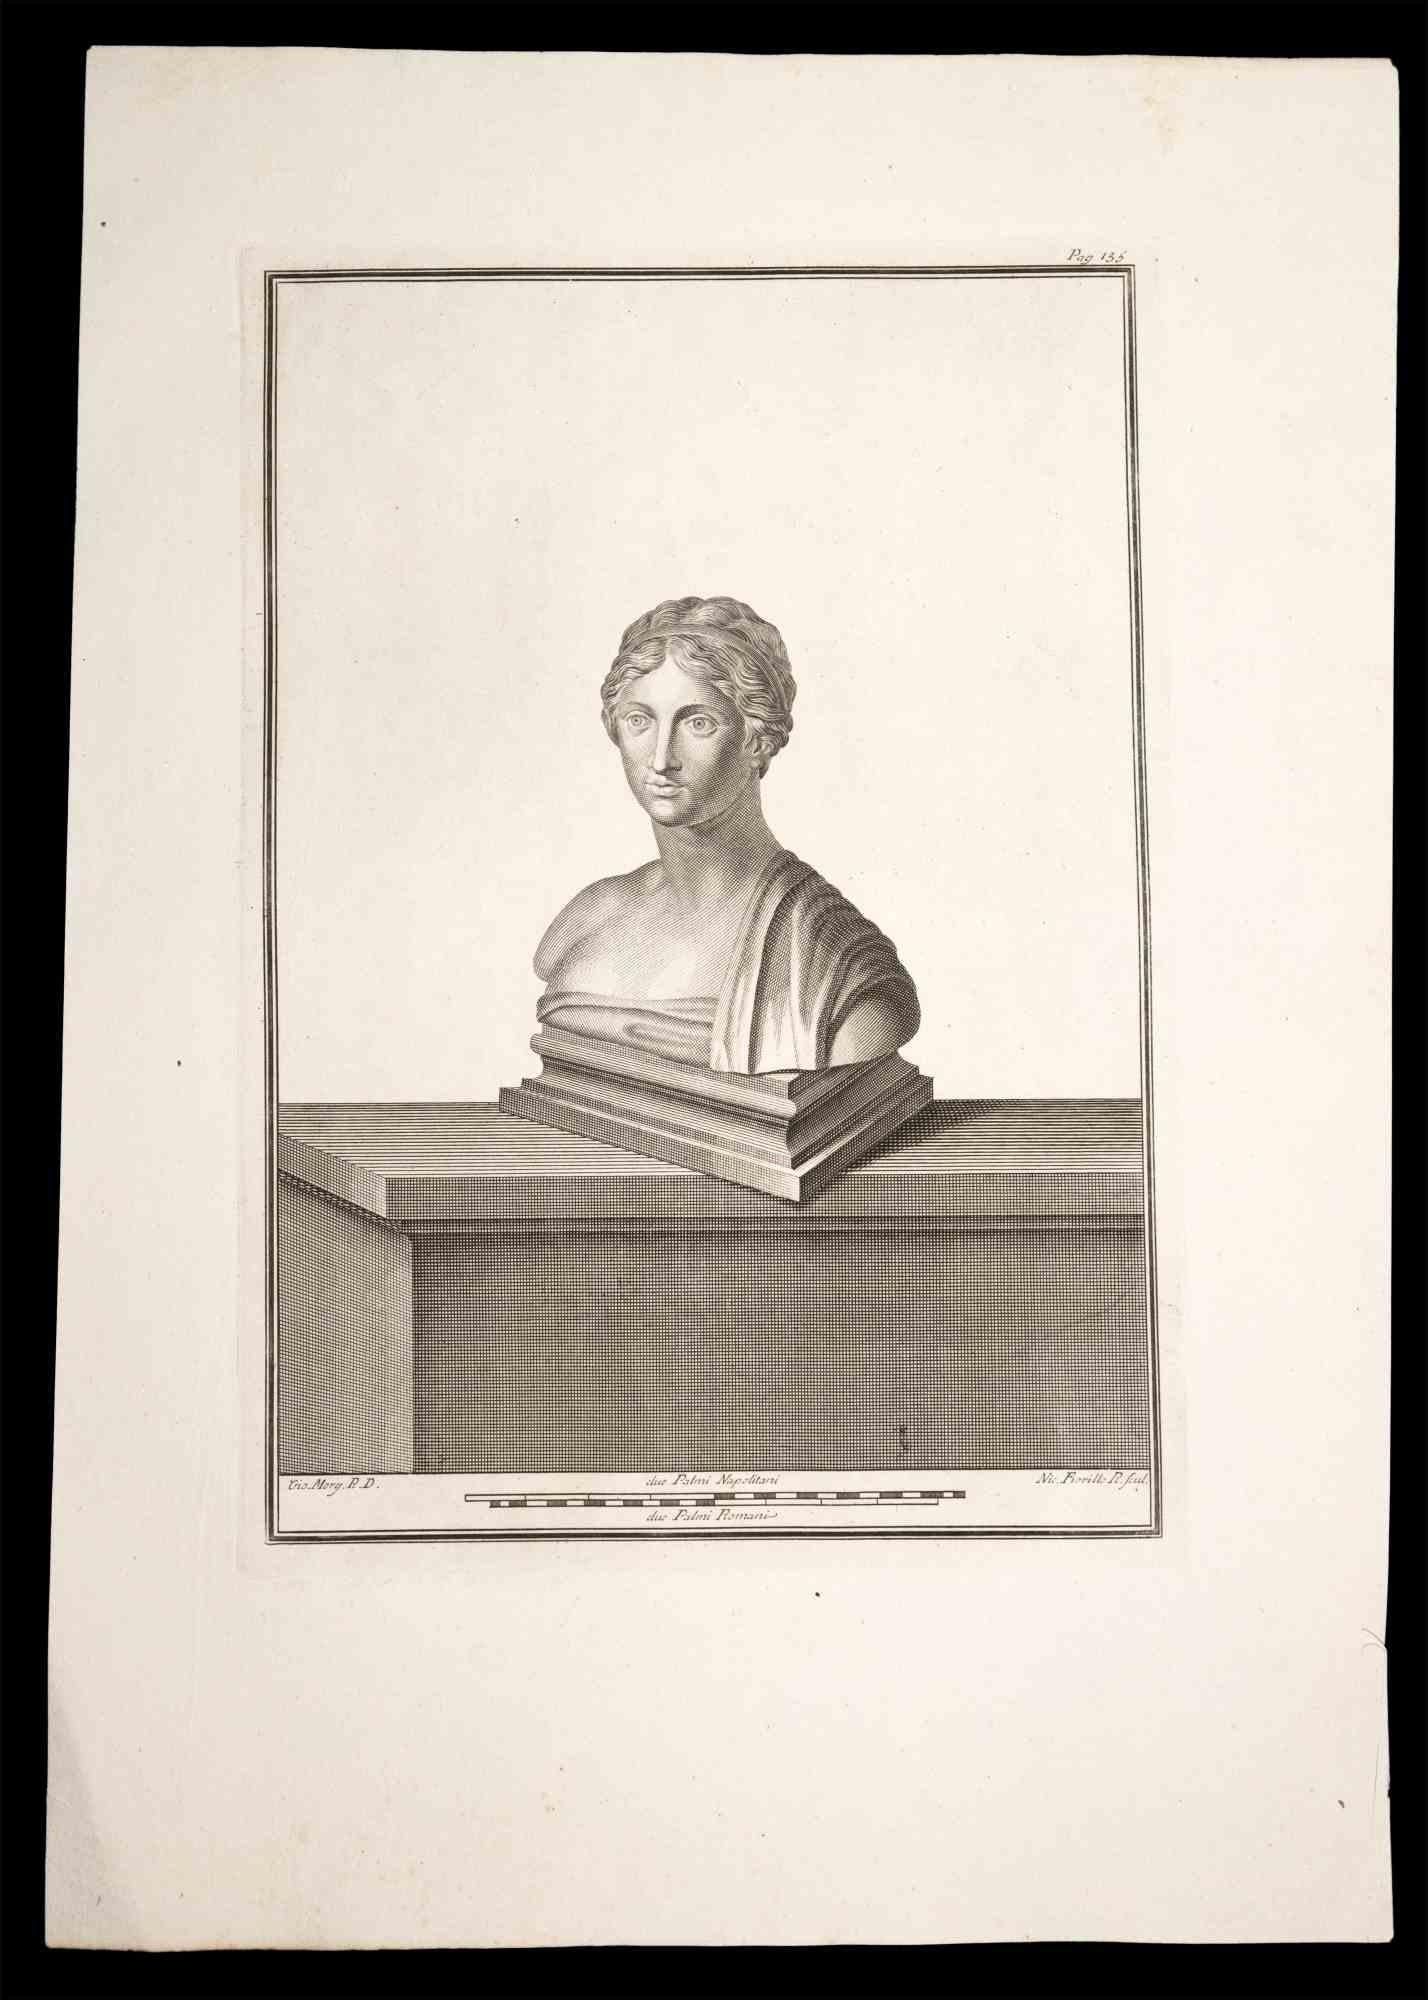 Antike römische Büste, aus der Serie "Antiquitäten von Herculaneum", ist eine Originalradierung auf Papier von Nicola Fiorillo aus dem 18.

Signiert auf der Platte unten rechts.

Gute Bedingungen.

Die Radierung gehört zu der Druckserie "Antiquities